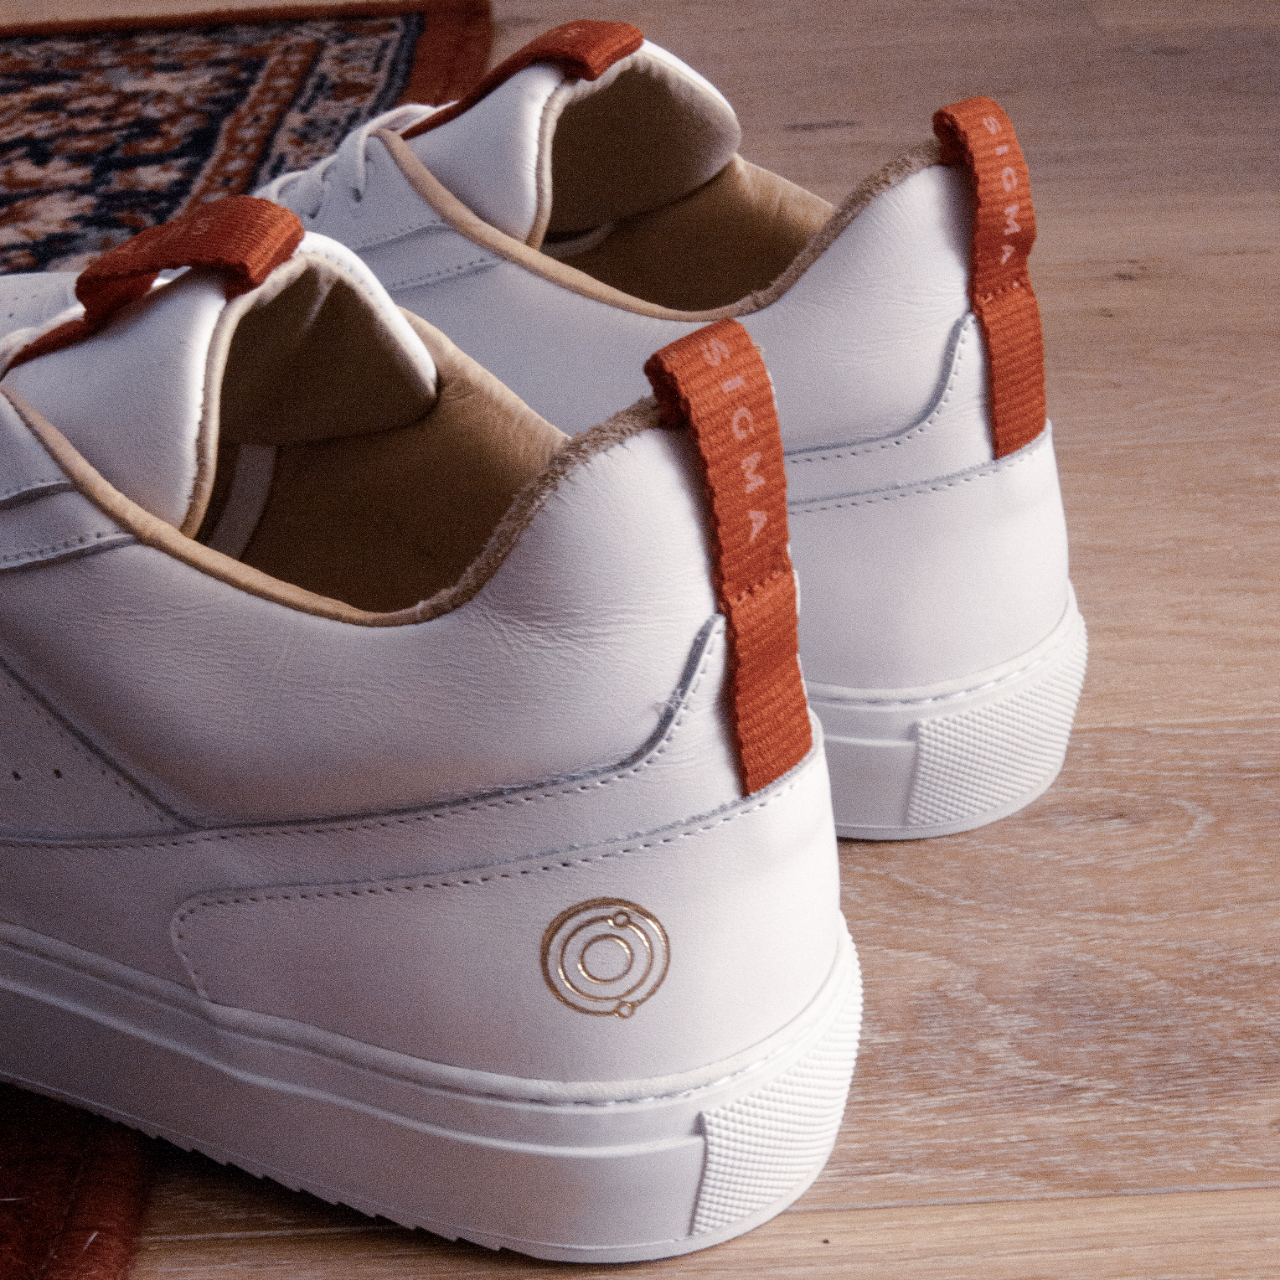 Sublte Shoes présente ses nouvelles baskets blanche en cuir, les Sigma